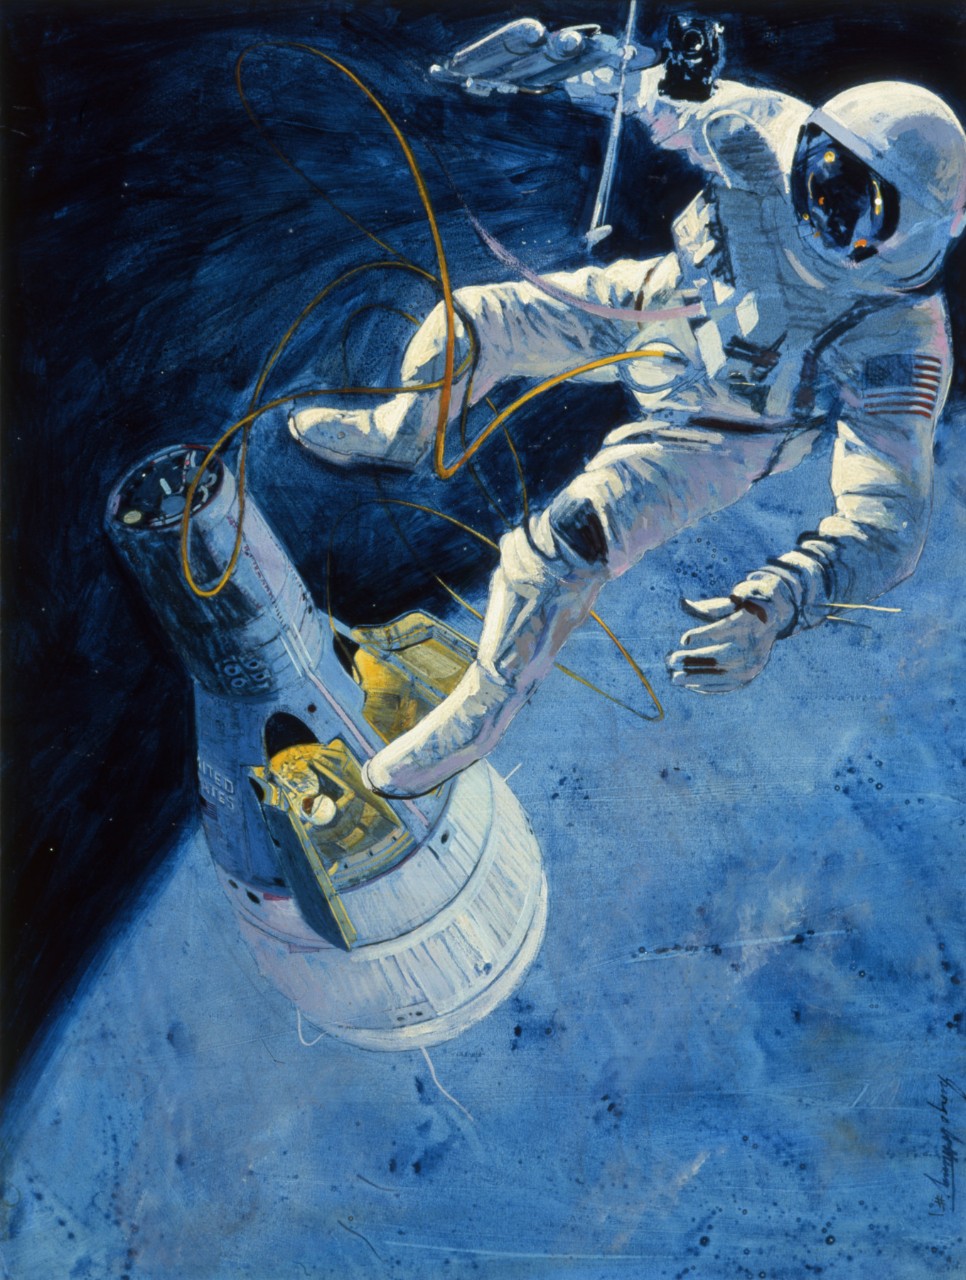 gemini spacecraft art